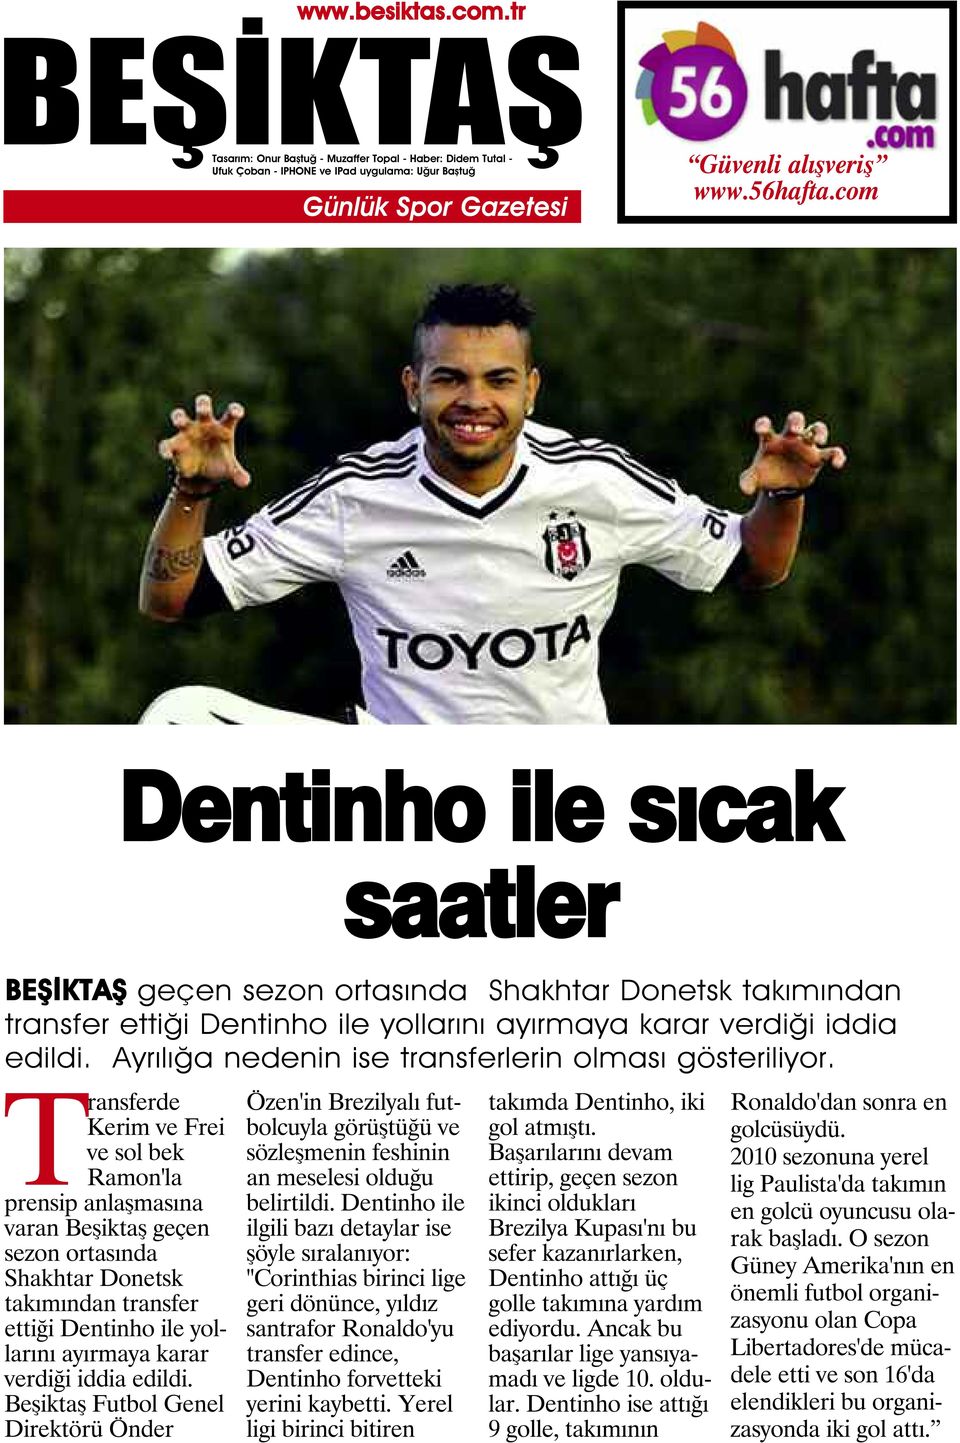 Transferde Kerim ve Frei ve sol bek Ramon'la prensip anlaşmasına varan Beşiktaş geçen sezon ortasında Shakhtar Donetsk takımından transfer ettiği Dentinho ile yollarını ayırmaya karar verdiği iddia